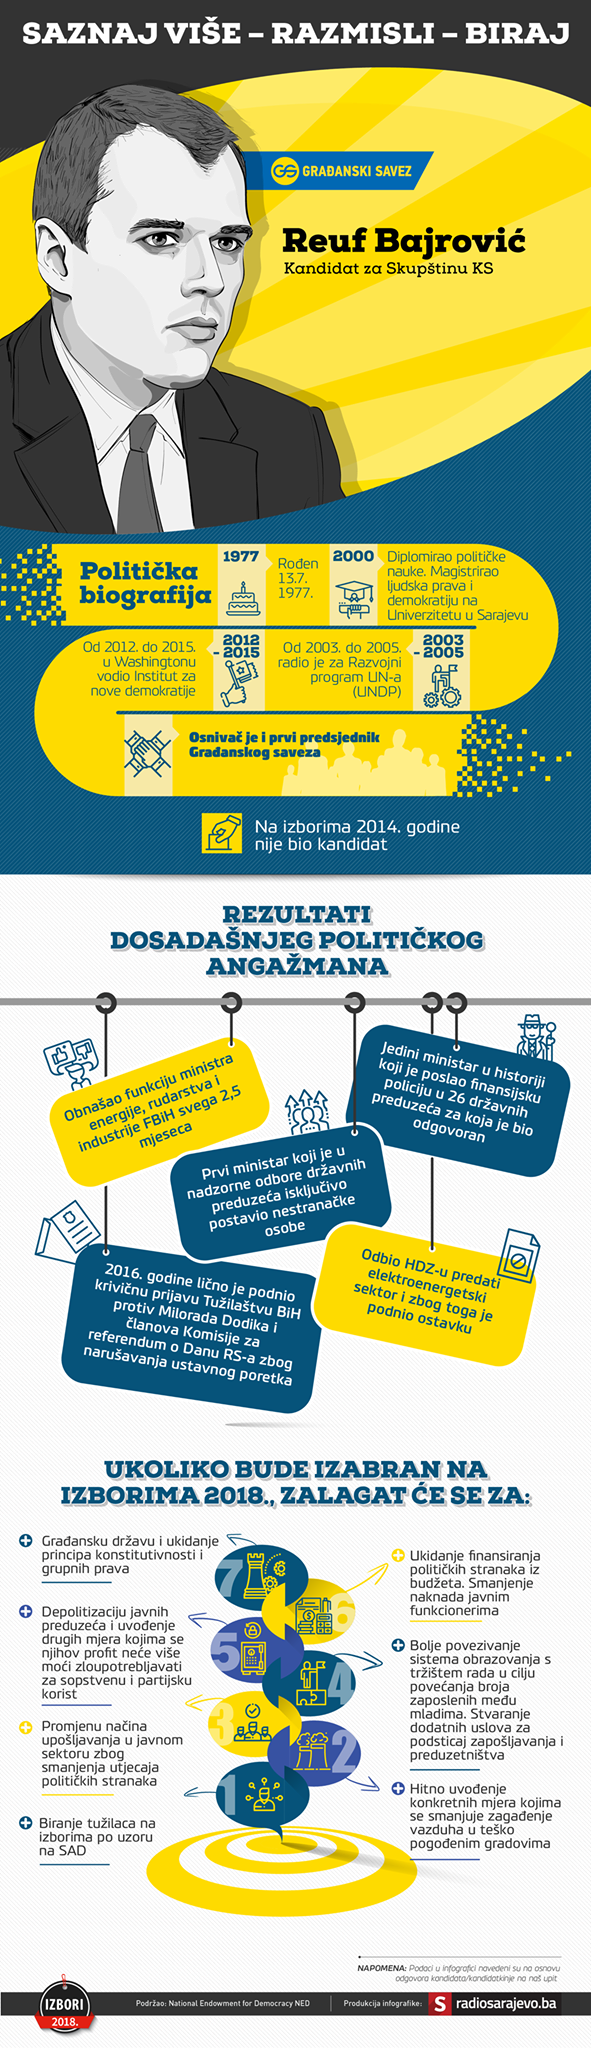 reuf-bajrovic-politicka-infografika.png - undefined